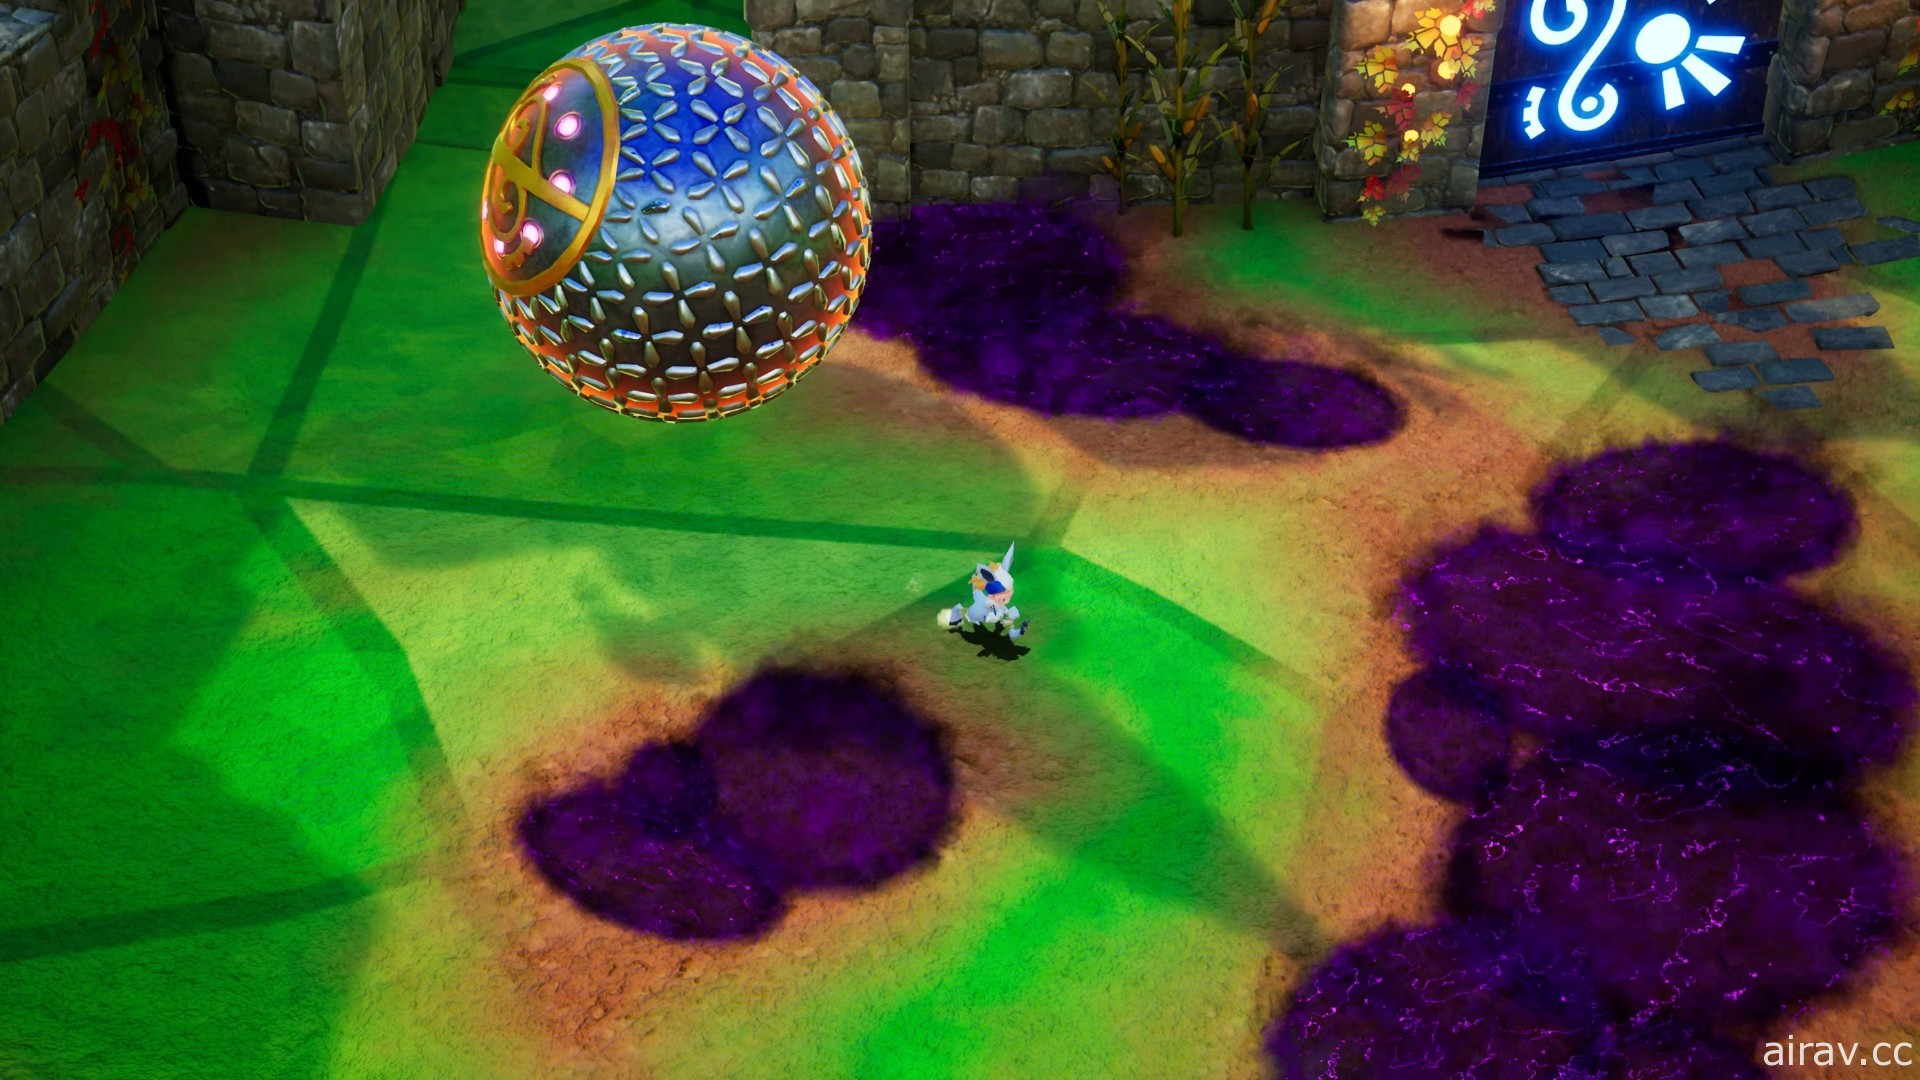 神奇动作游戏《巴兰的异想奇境》确定推出可双人游玩的体验版